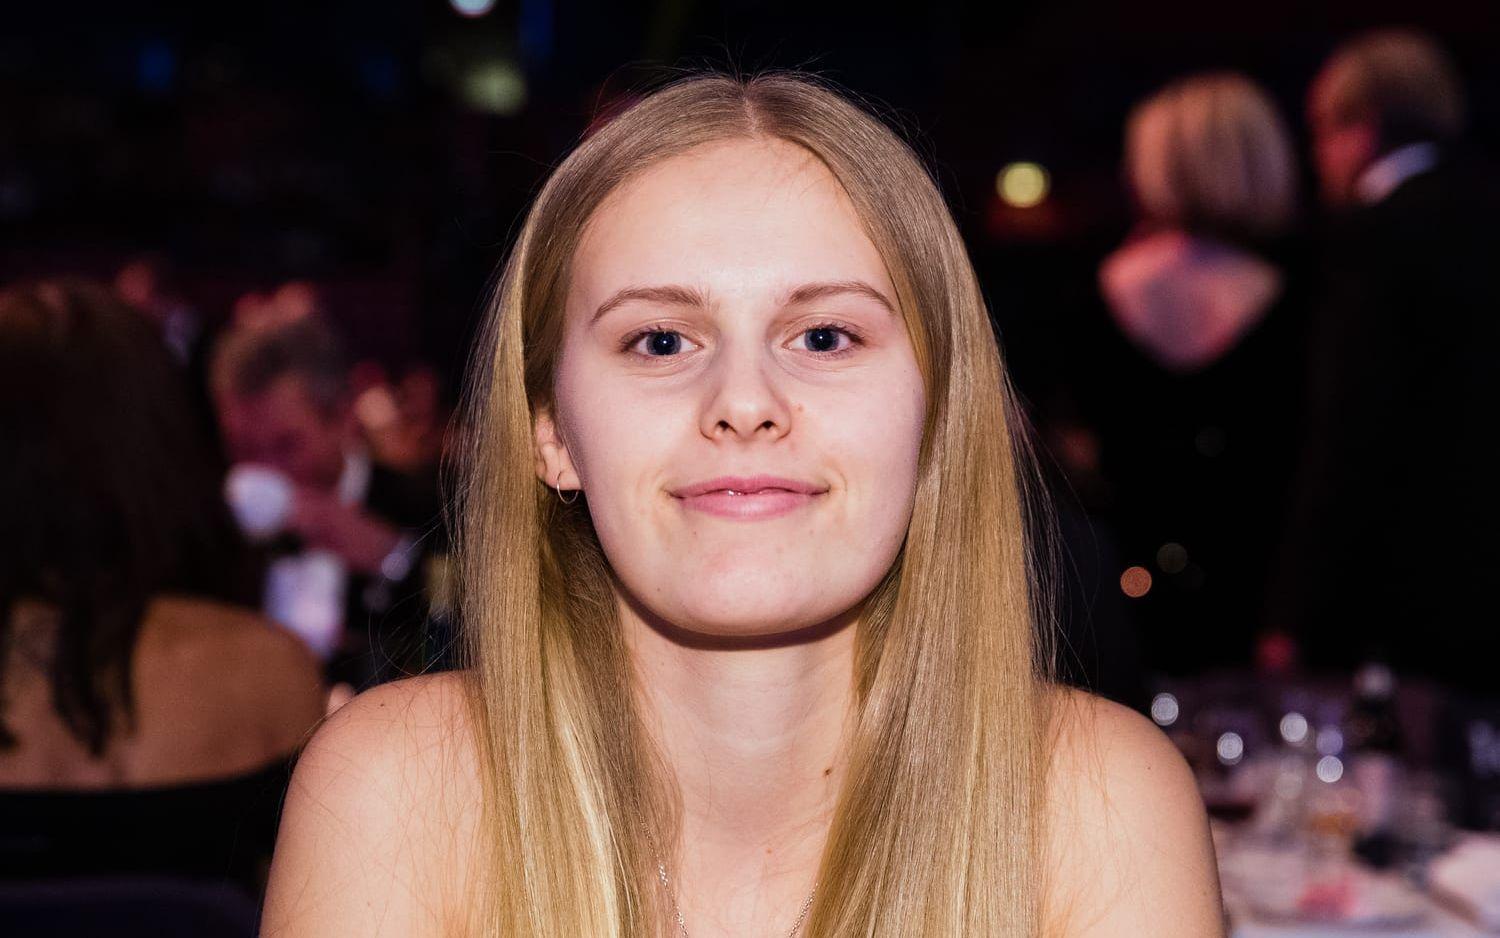 Sveriges yngsta vinterolympier någonsin, Jennie-Lee Burmansson, slutar endast 20 år gammal.